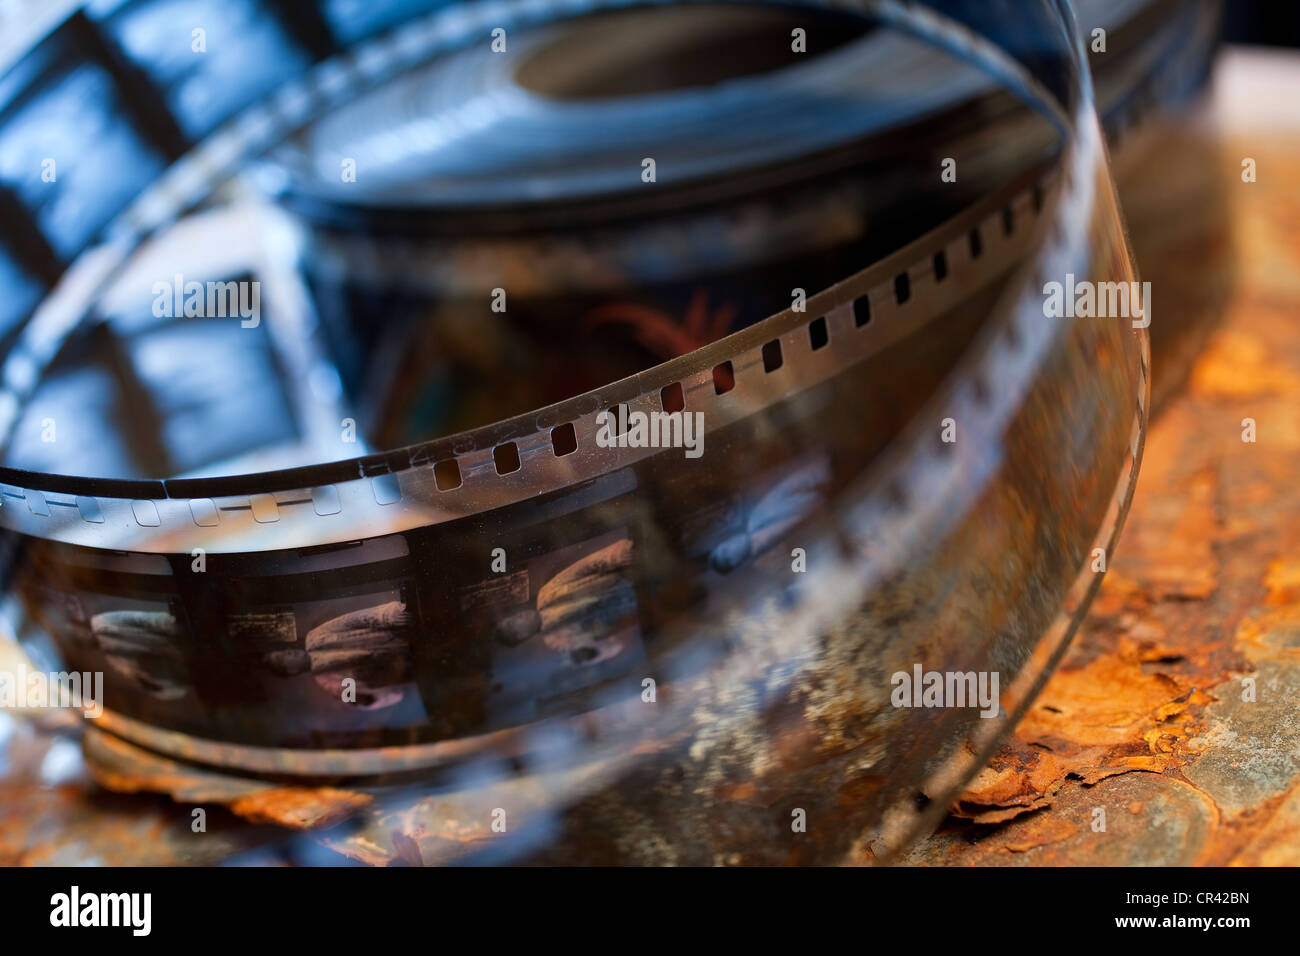 France, Paris, Lobster Films Workshop, old films restorer, close up on film Stock Photo